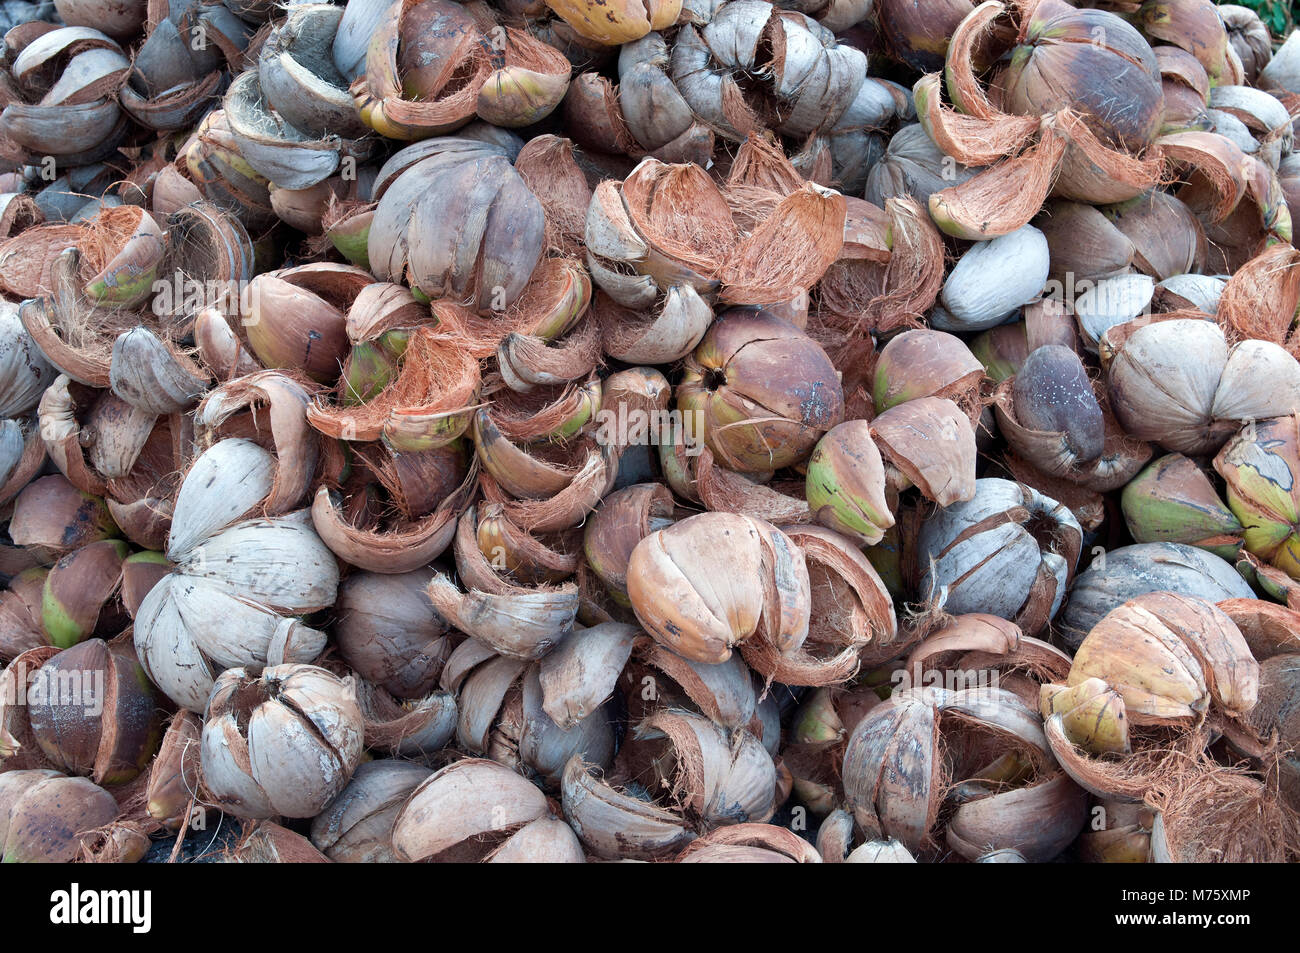 Thailandia - Koh Samui - gusci di noce di cocco svuotata per olio (Cocos nucifera) Foto Stock